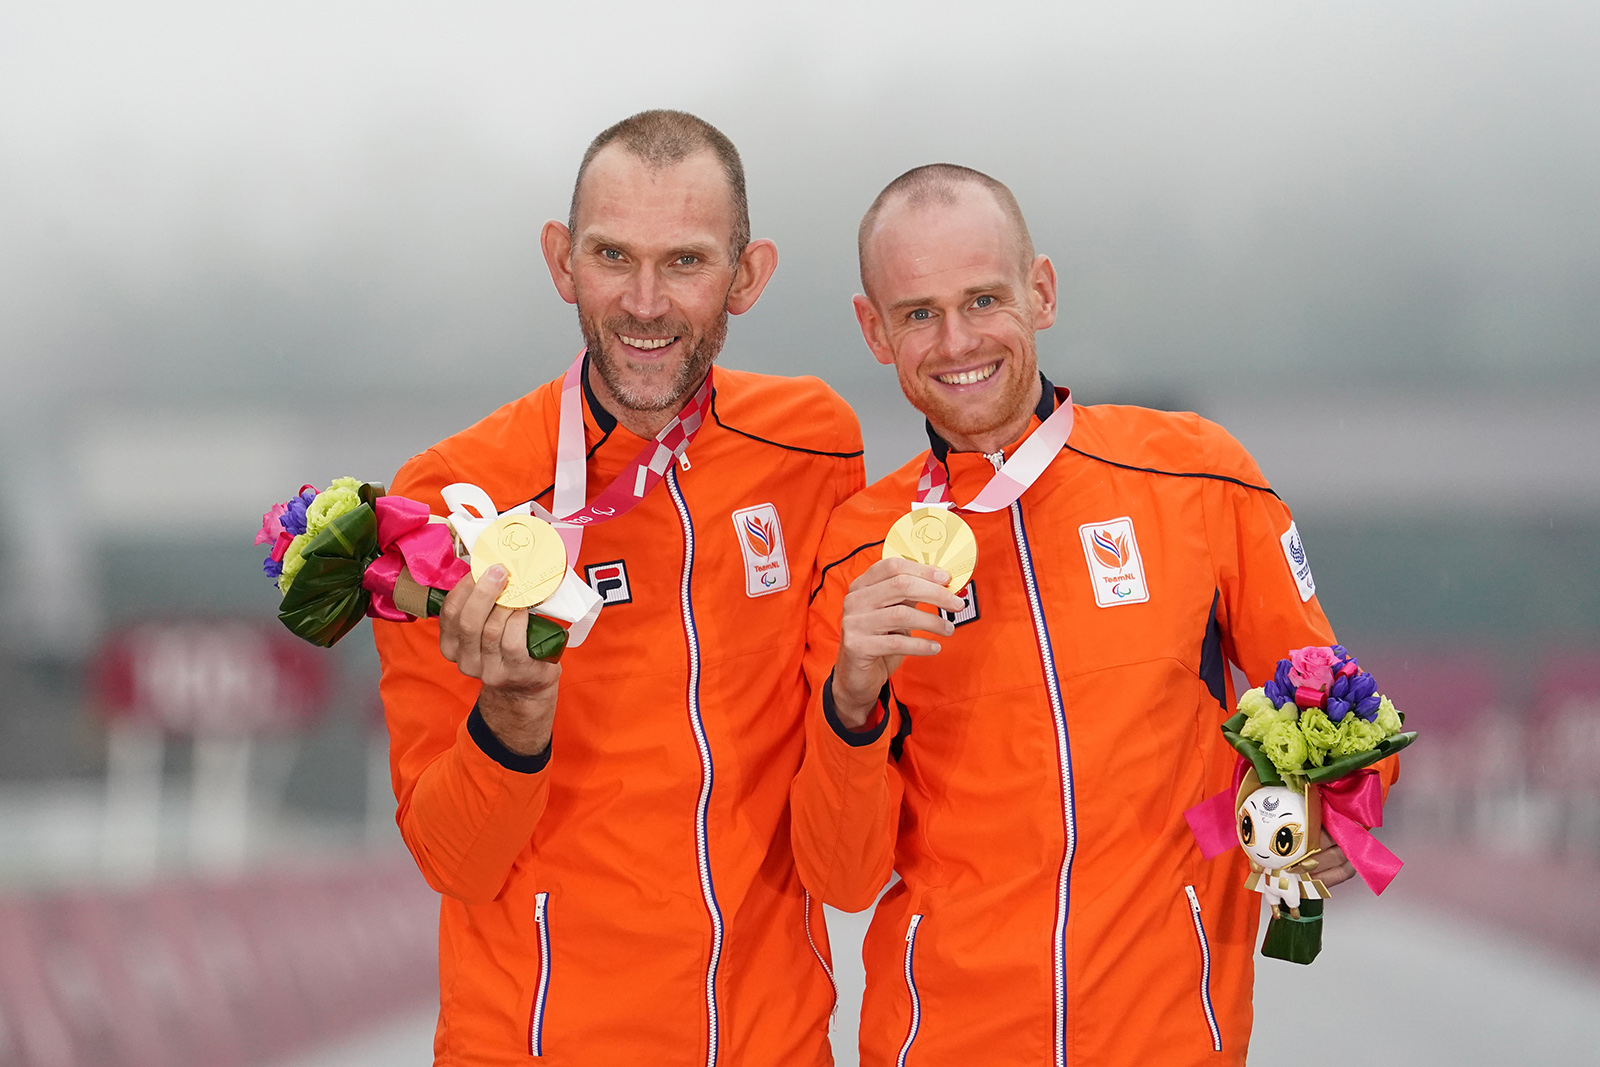 Vincent en Timo tonen hun gouden medaille.